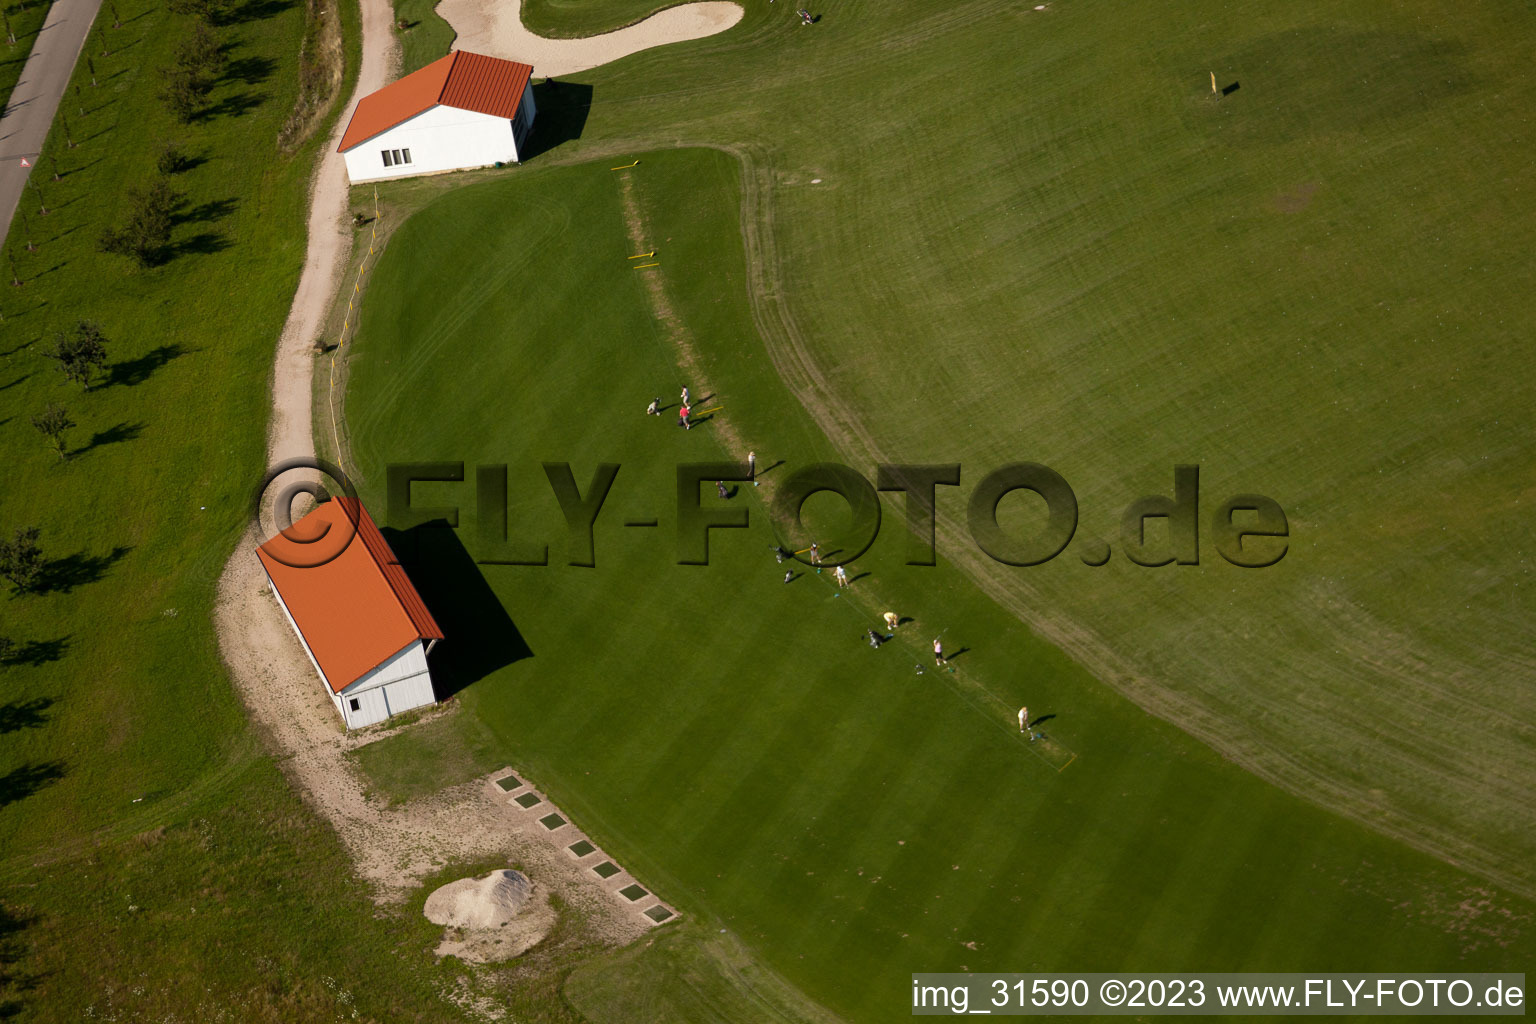 Club de golf Urloffen e. v à le quartier Urloffen in Appenweier dans le département Bade-Wurtemberg, Allemagne d'en haut